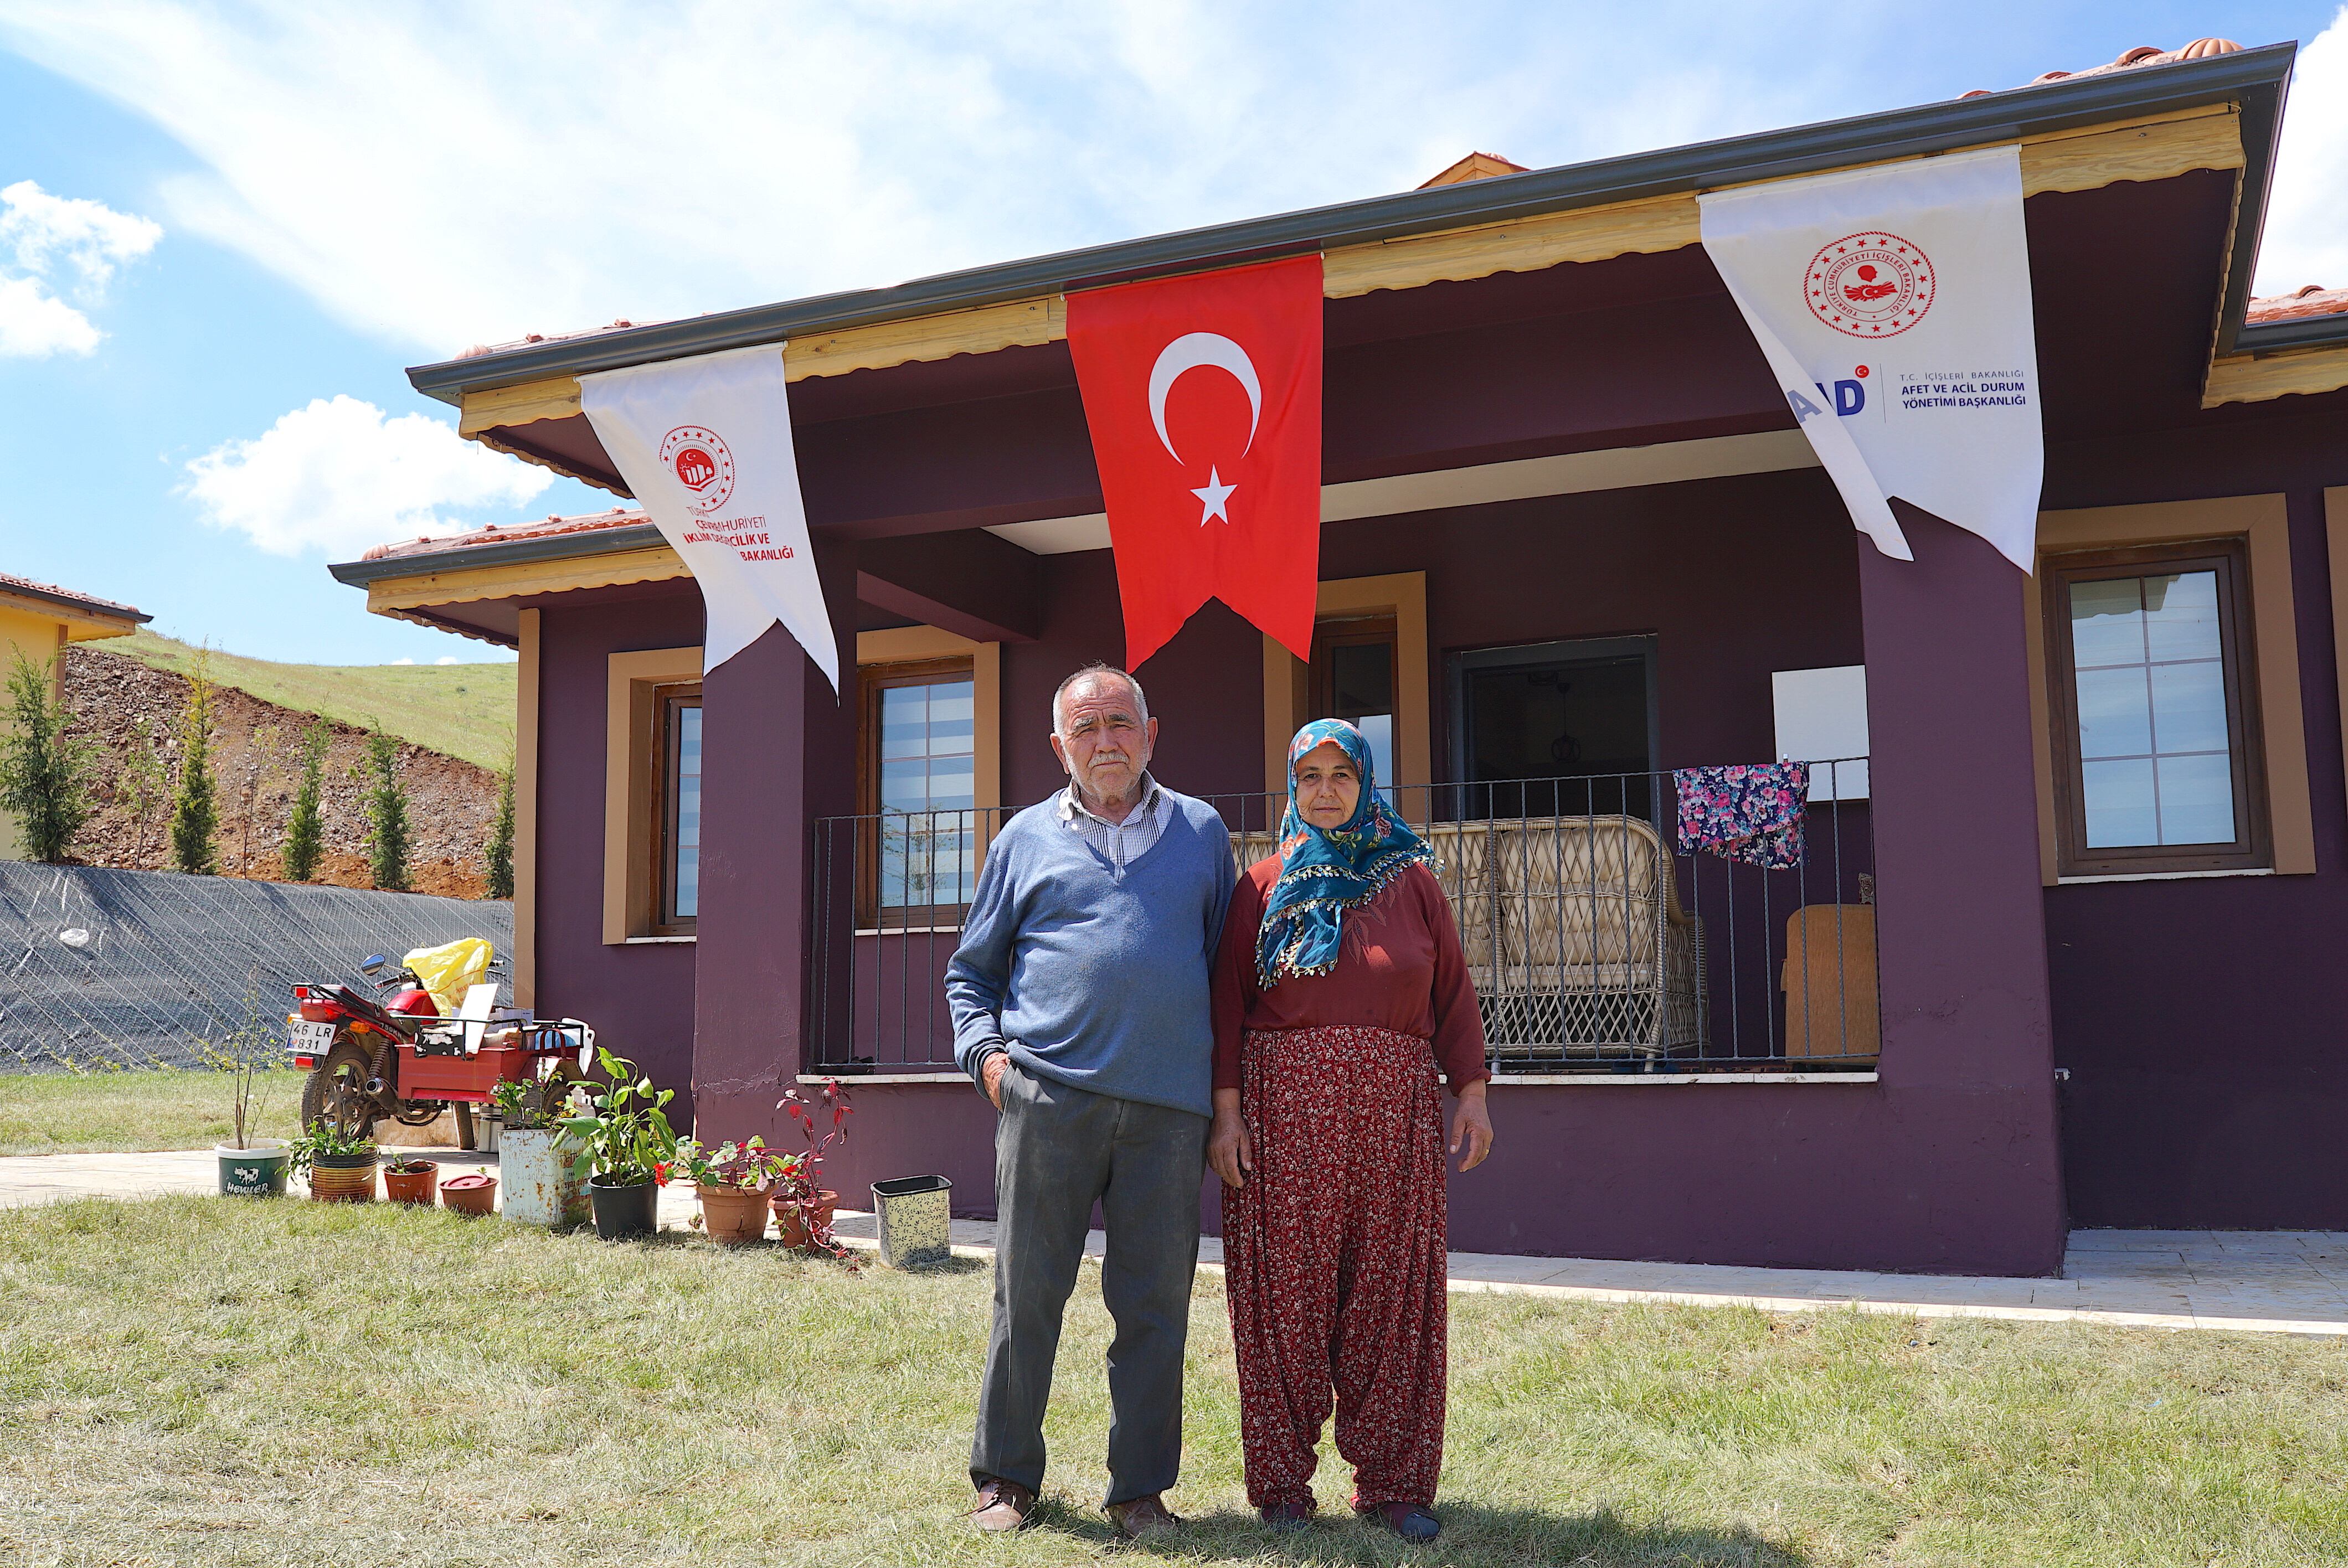 El matrimonio Demir posa junto a su nuevo chalet, construido por el Gobierno turco para los damnificados del terremoto de la aldea de Belpinar (provinicia de Gaziantep), el miércoles 26 de abril.